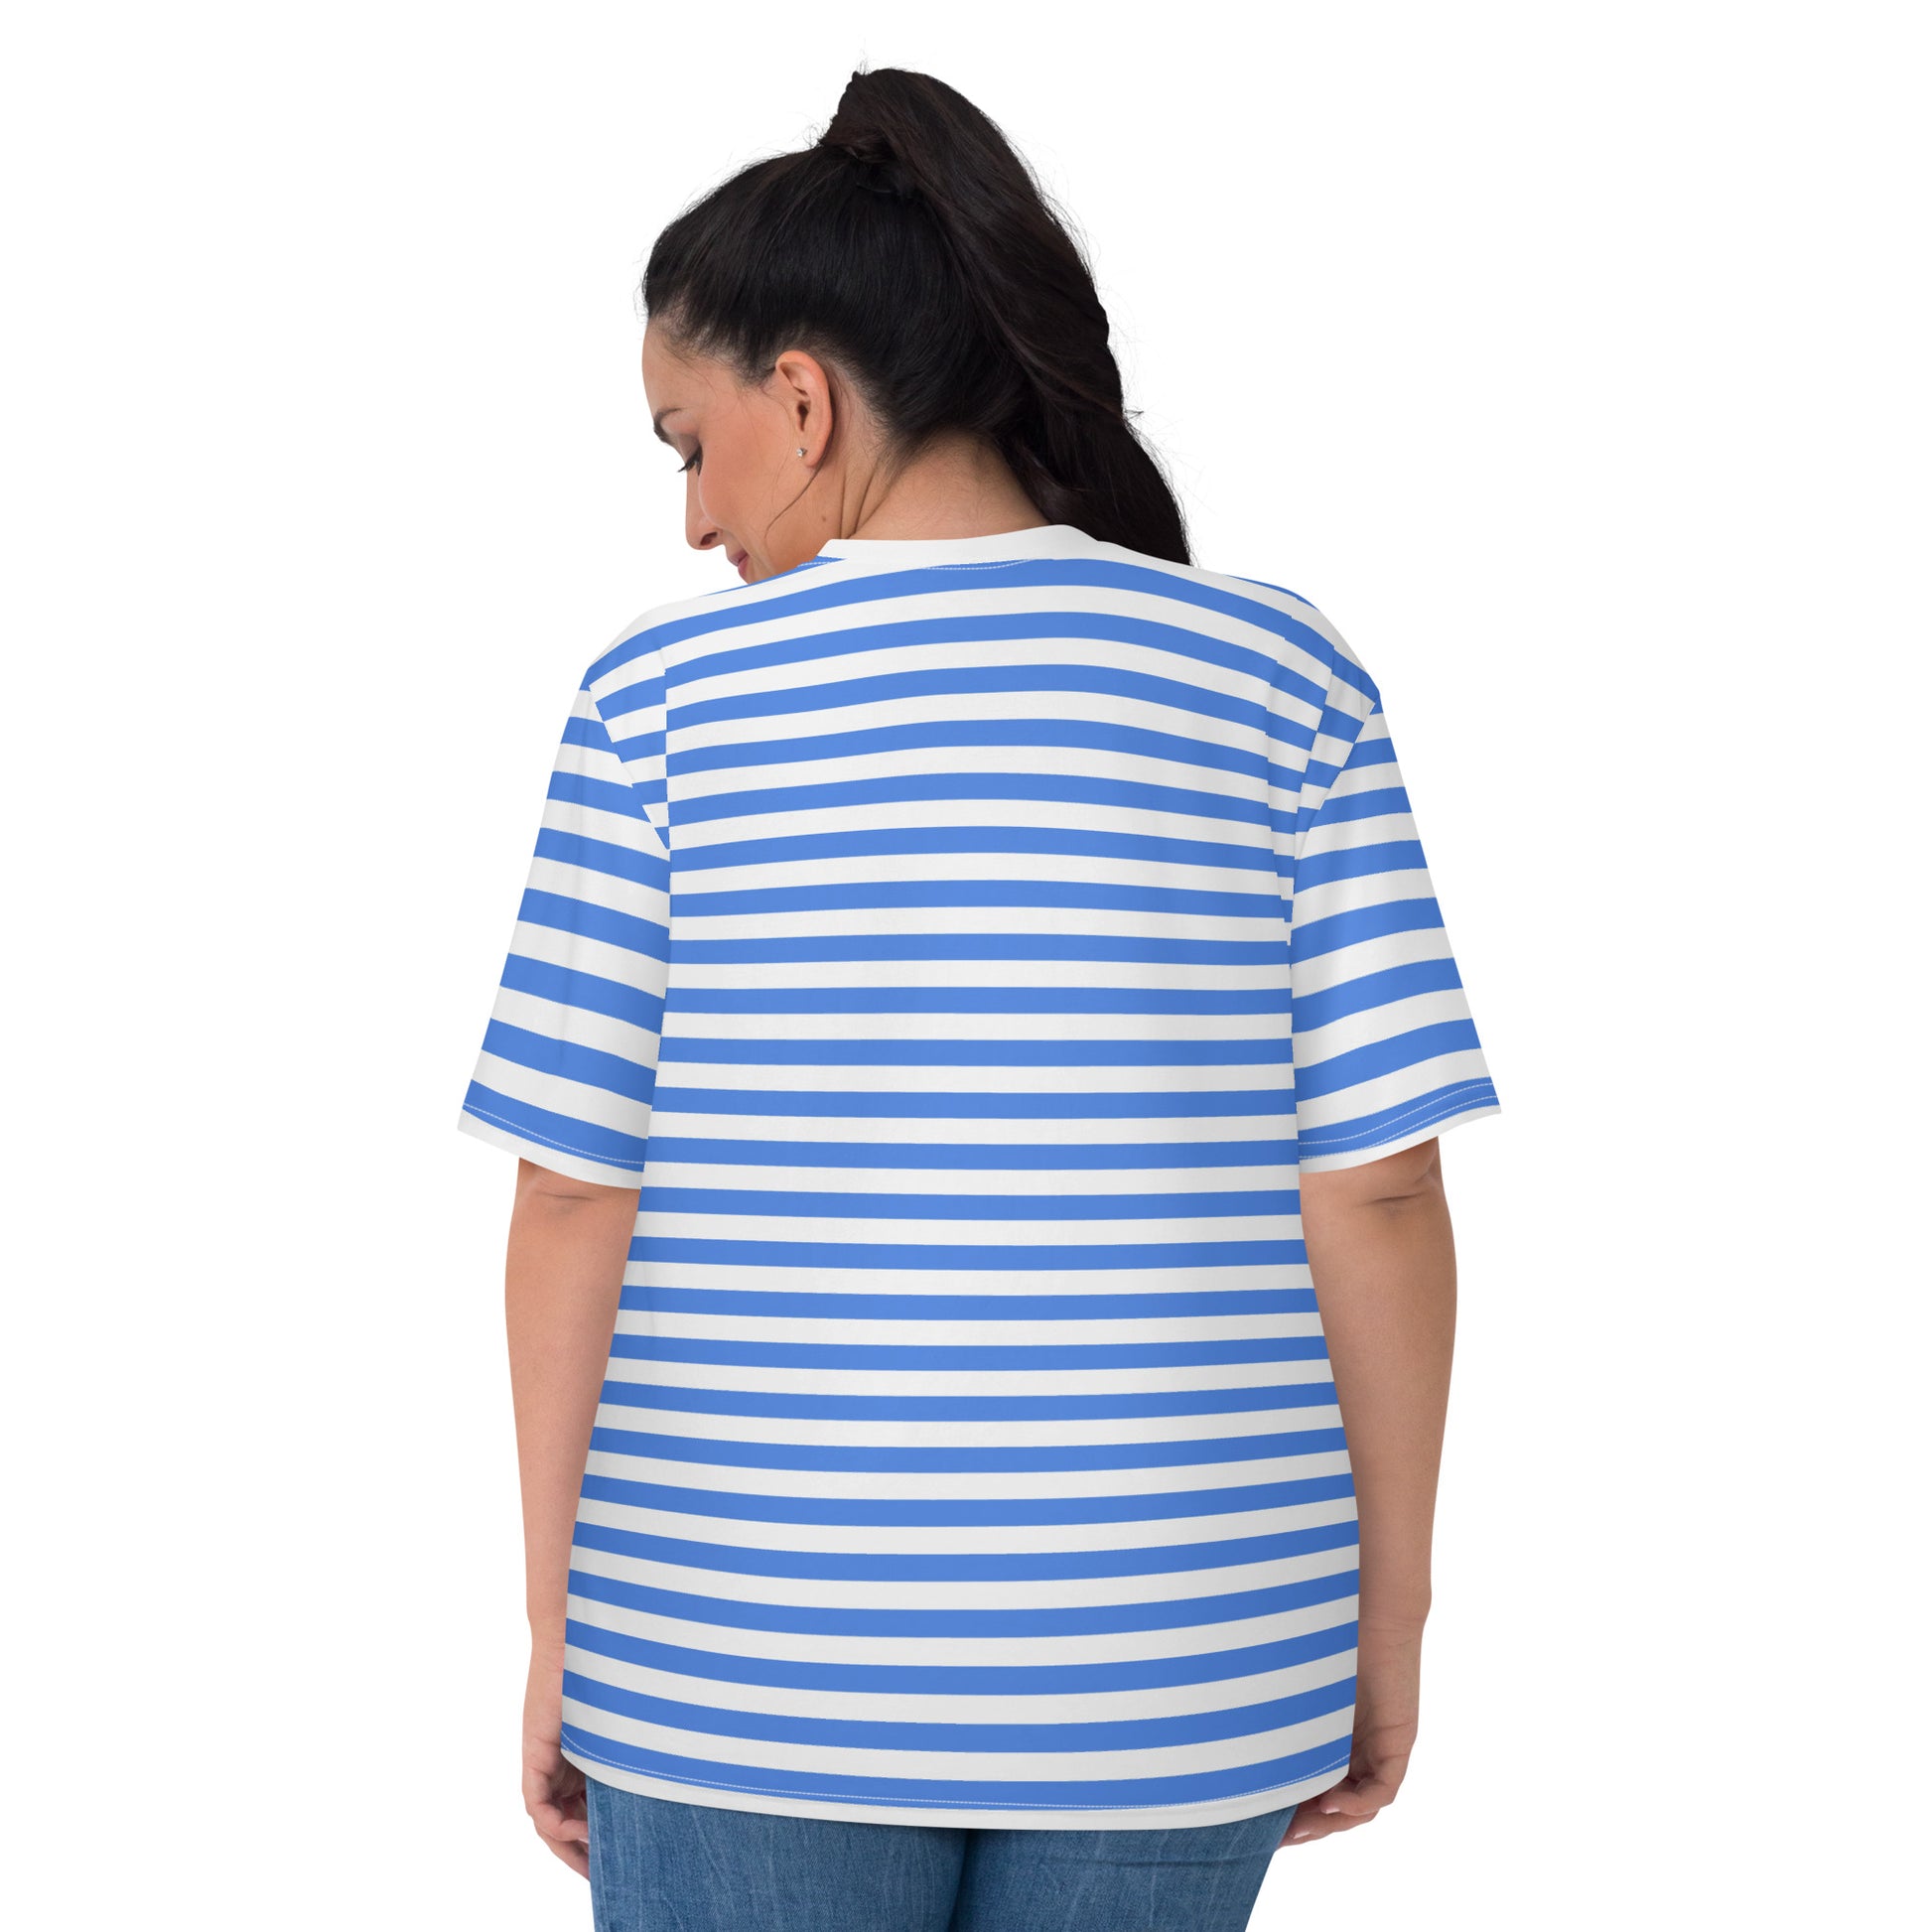 Plus Size Blue Striped Tshirt